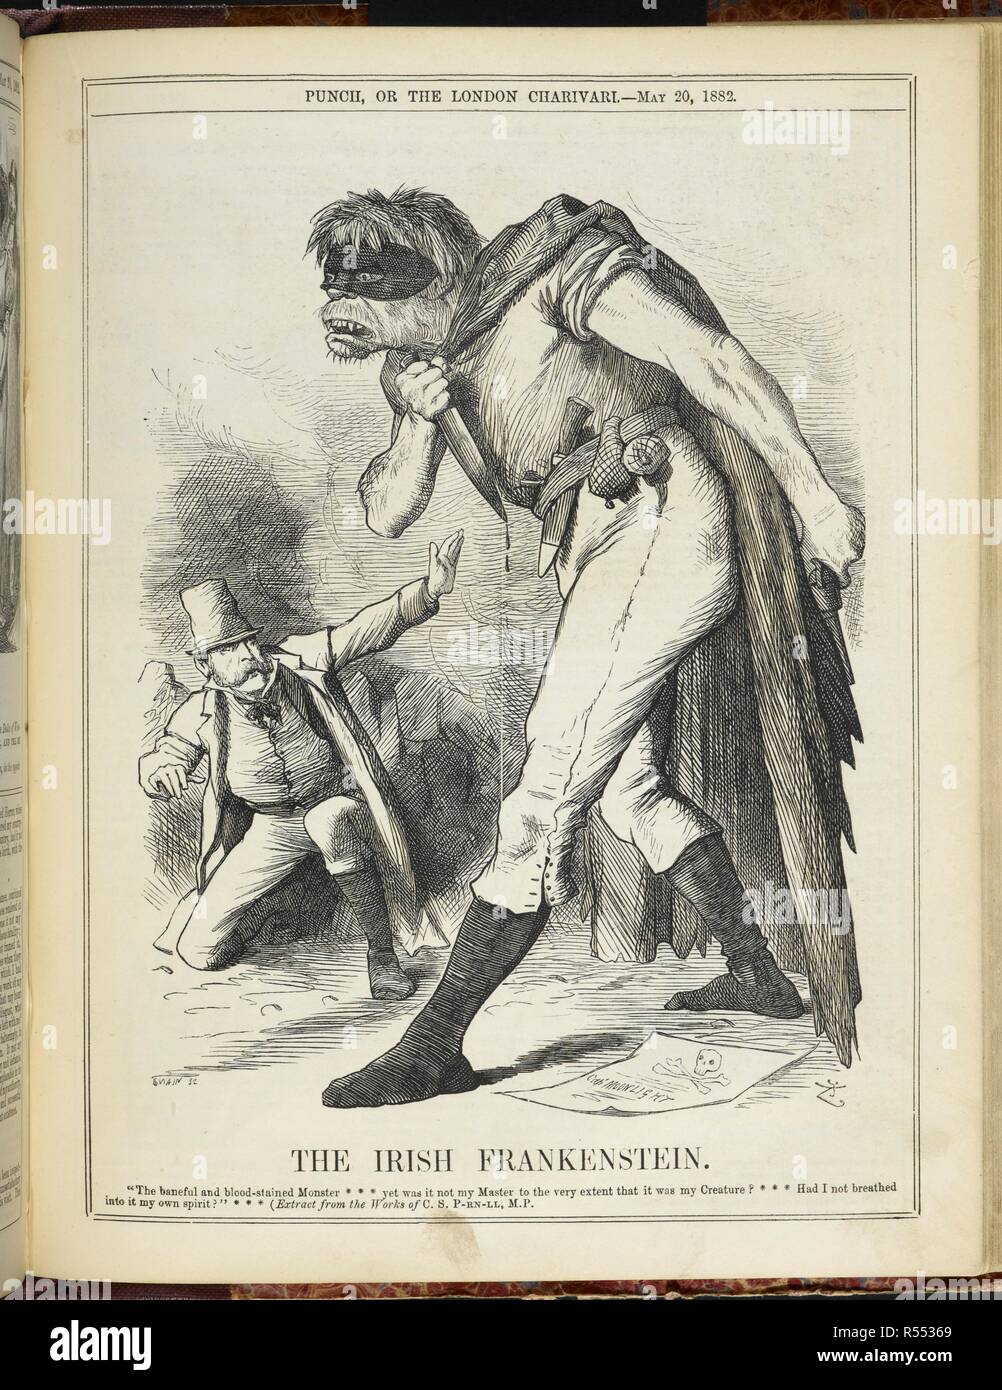 Les Irlandais Frankenstein. 'Le nuisible et Monster tachée de sang ...'. La citation est de Mary Shelley's Frankenstein. Charles Stuart Parnell est représentée, avec "son monstre" qui représente le mouvement des Fenians. Punch, or the London Charivari. Londres, le 20 mai 1882. La caricature est anti-propagande irlandaise et est une référence à l'assassinat du parc Phoenix. Source : P.P.5270, page 235. Auteur : TENNIEL, John. Banque D'Images